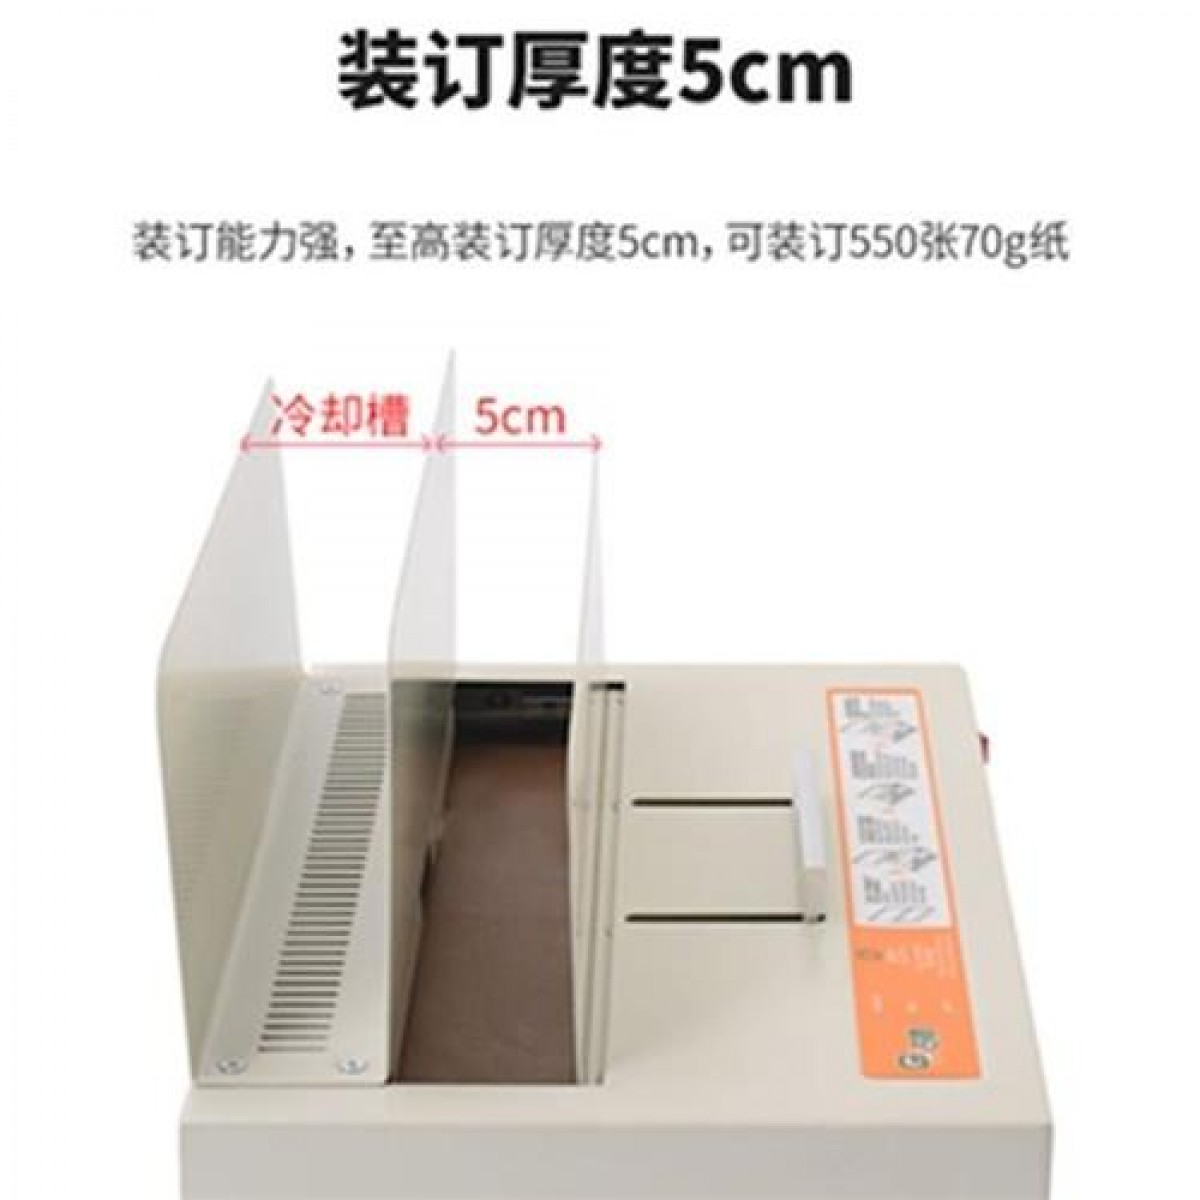 胶装机热熔装订机胶印机文件作业全自动文具夹条热熔。凭证装订